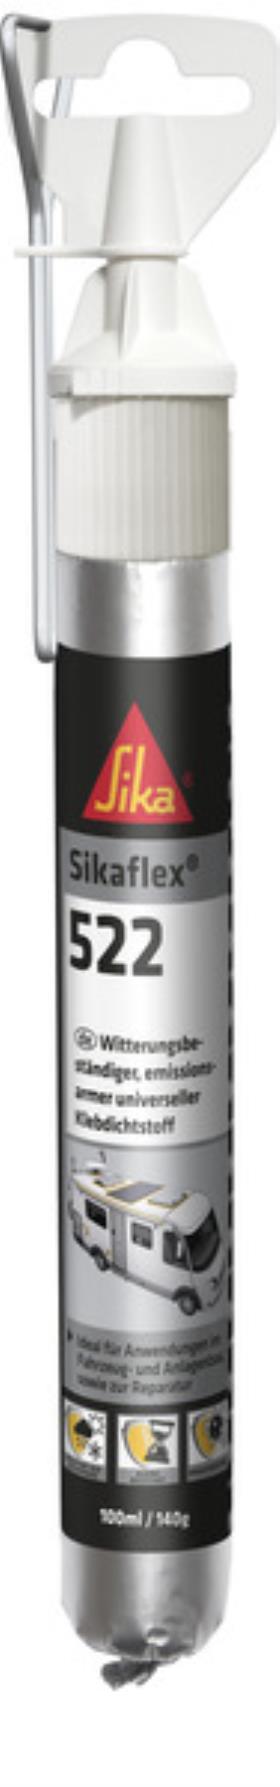 Sikaflex 522, hvid